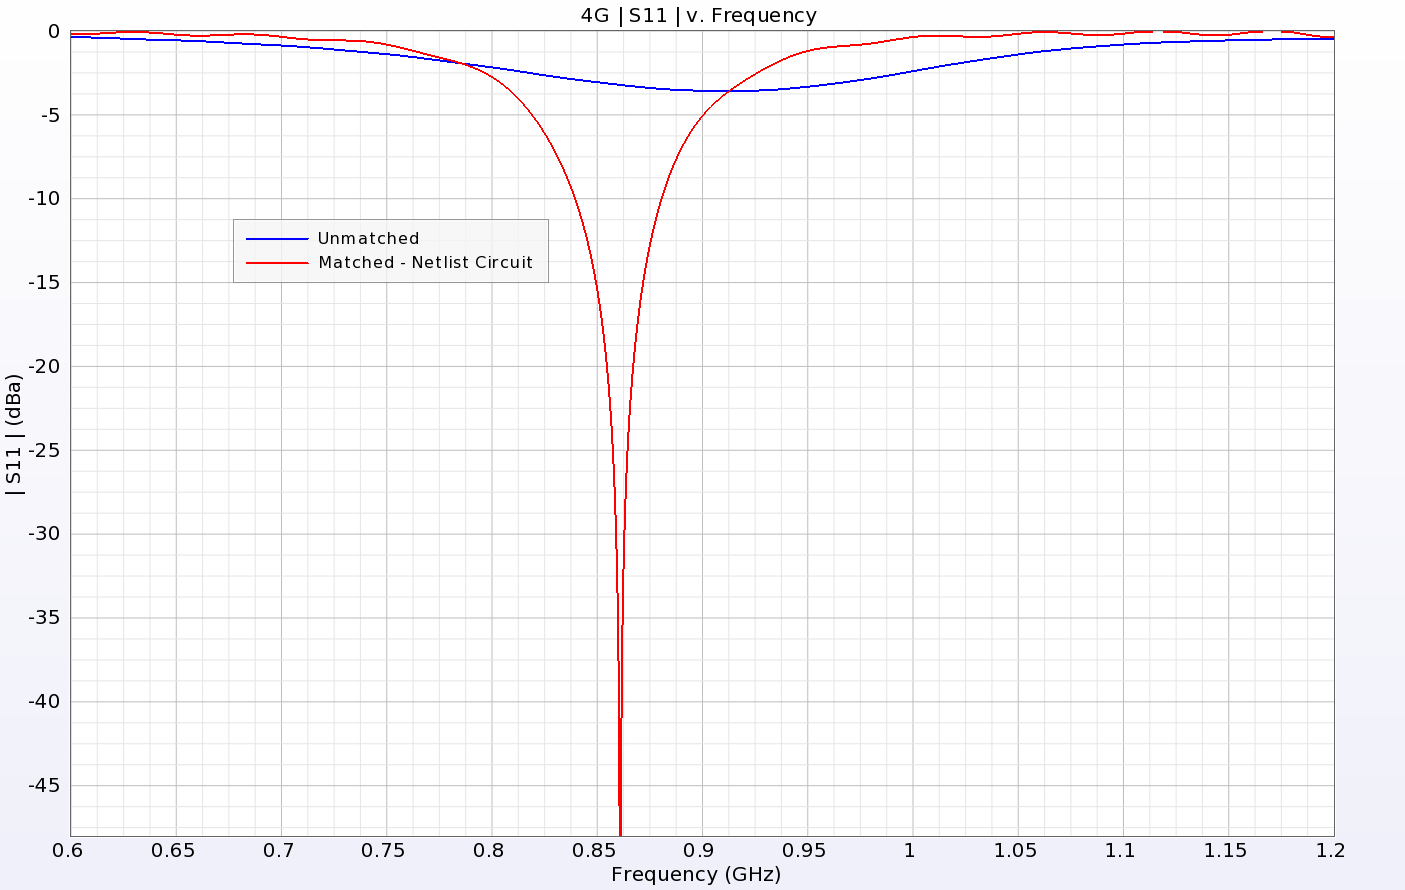 图 6：未匹配和匹配 4G 天线的回波损耗对比。